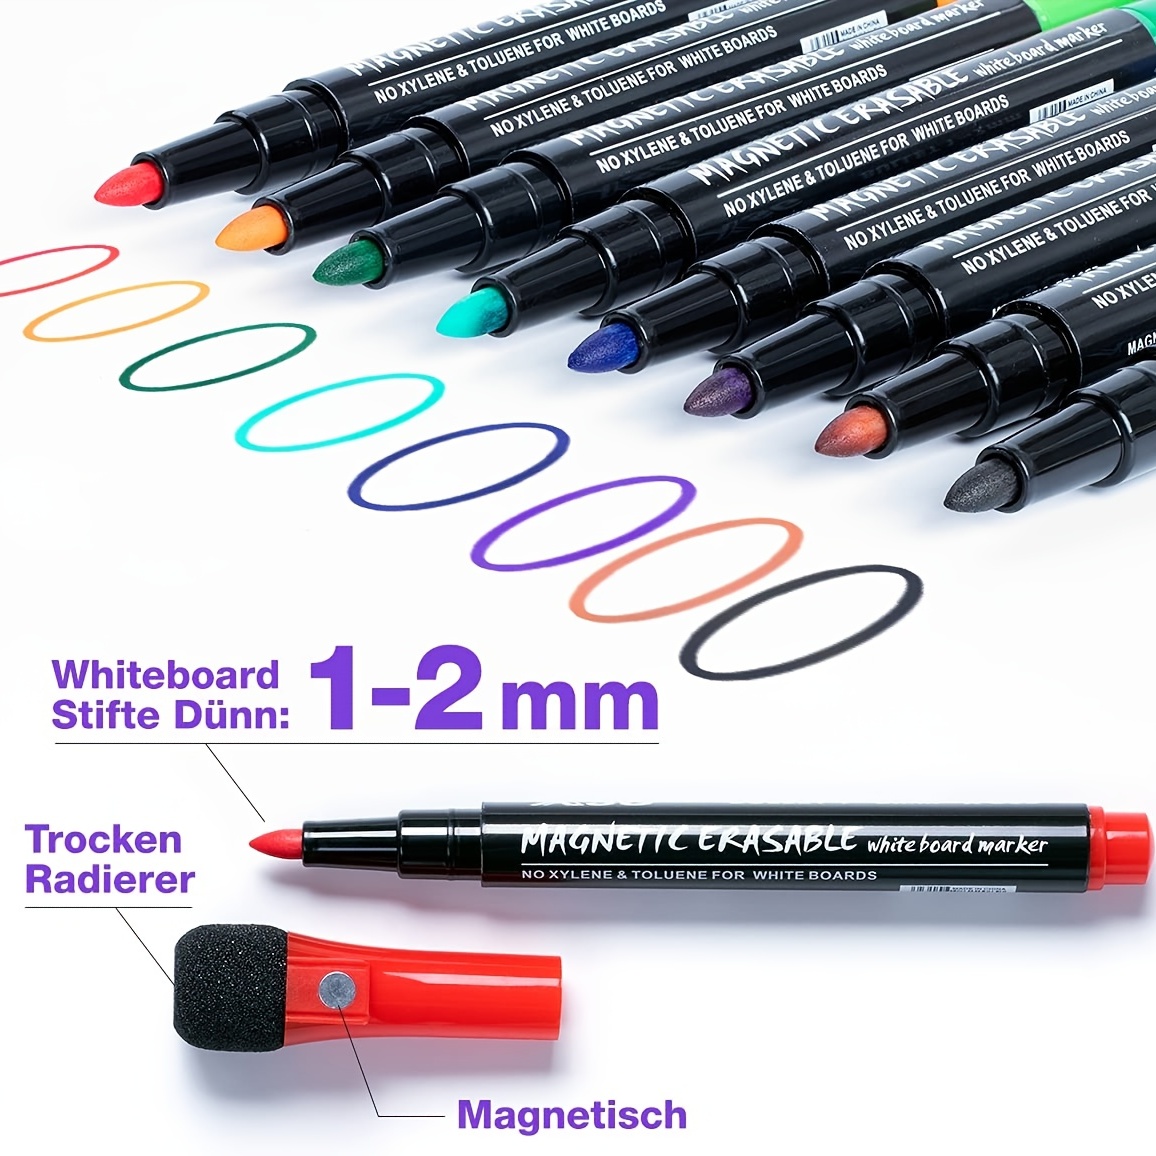 The Mega Deals Dry Erase Markers, Whiteboard Erasers, Magnetic Pen Holder Bundle - 12 Count Whiteboard Markers and 1 Magnetic Dry Erase Eras